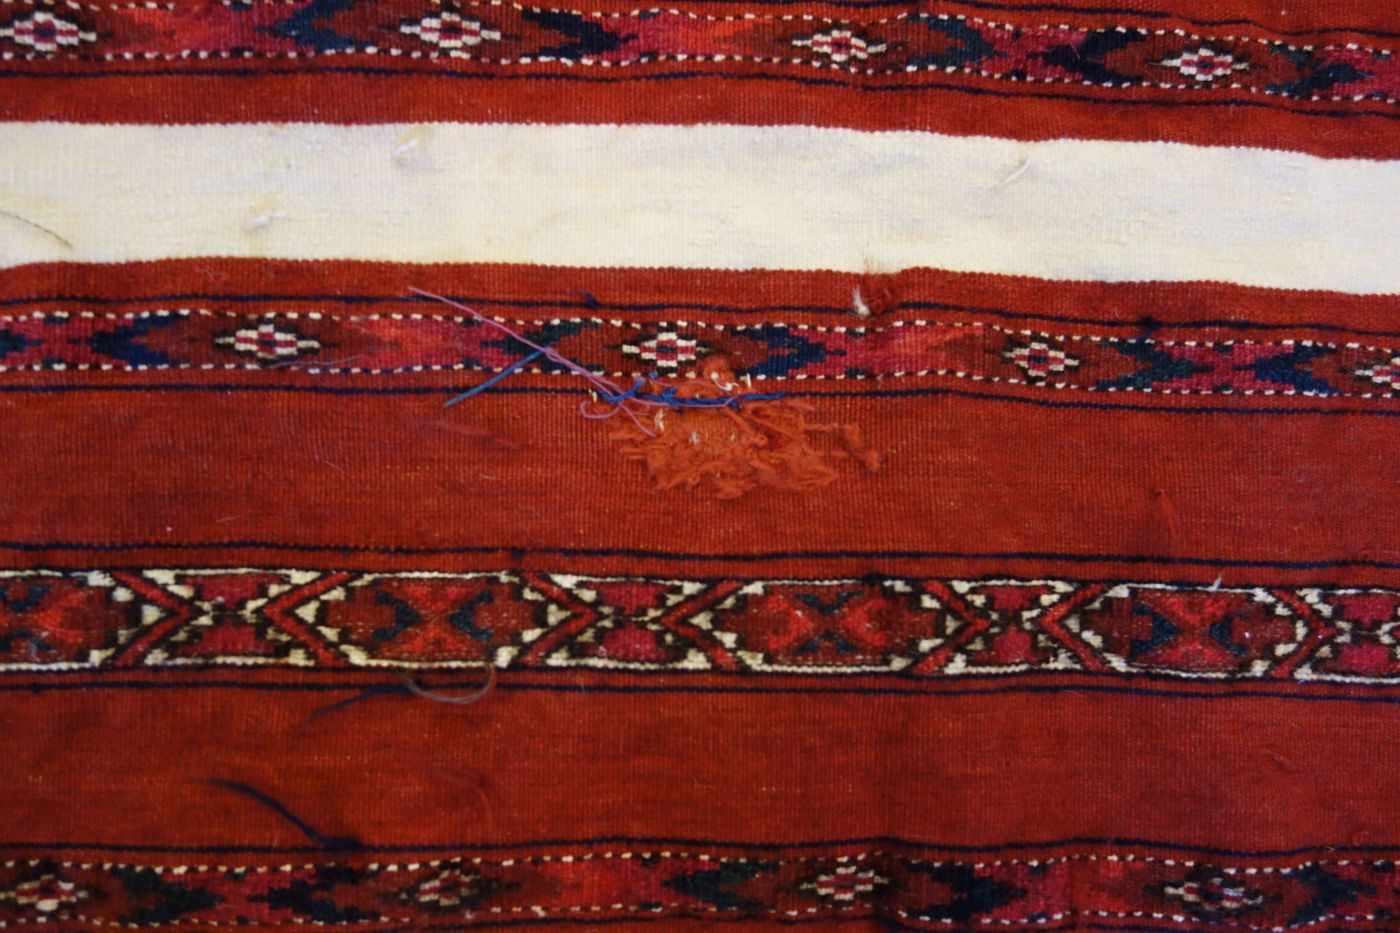 TEKKE AK-TSCHOWAL / TEPPICH / carpet, Turkmenistan, wohl 2. H. 19. Jh., Wechsel von Flor und - Bild 8 aus 18